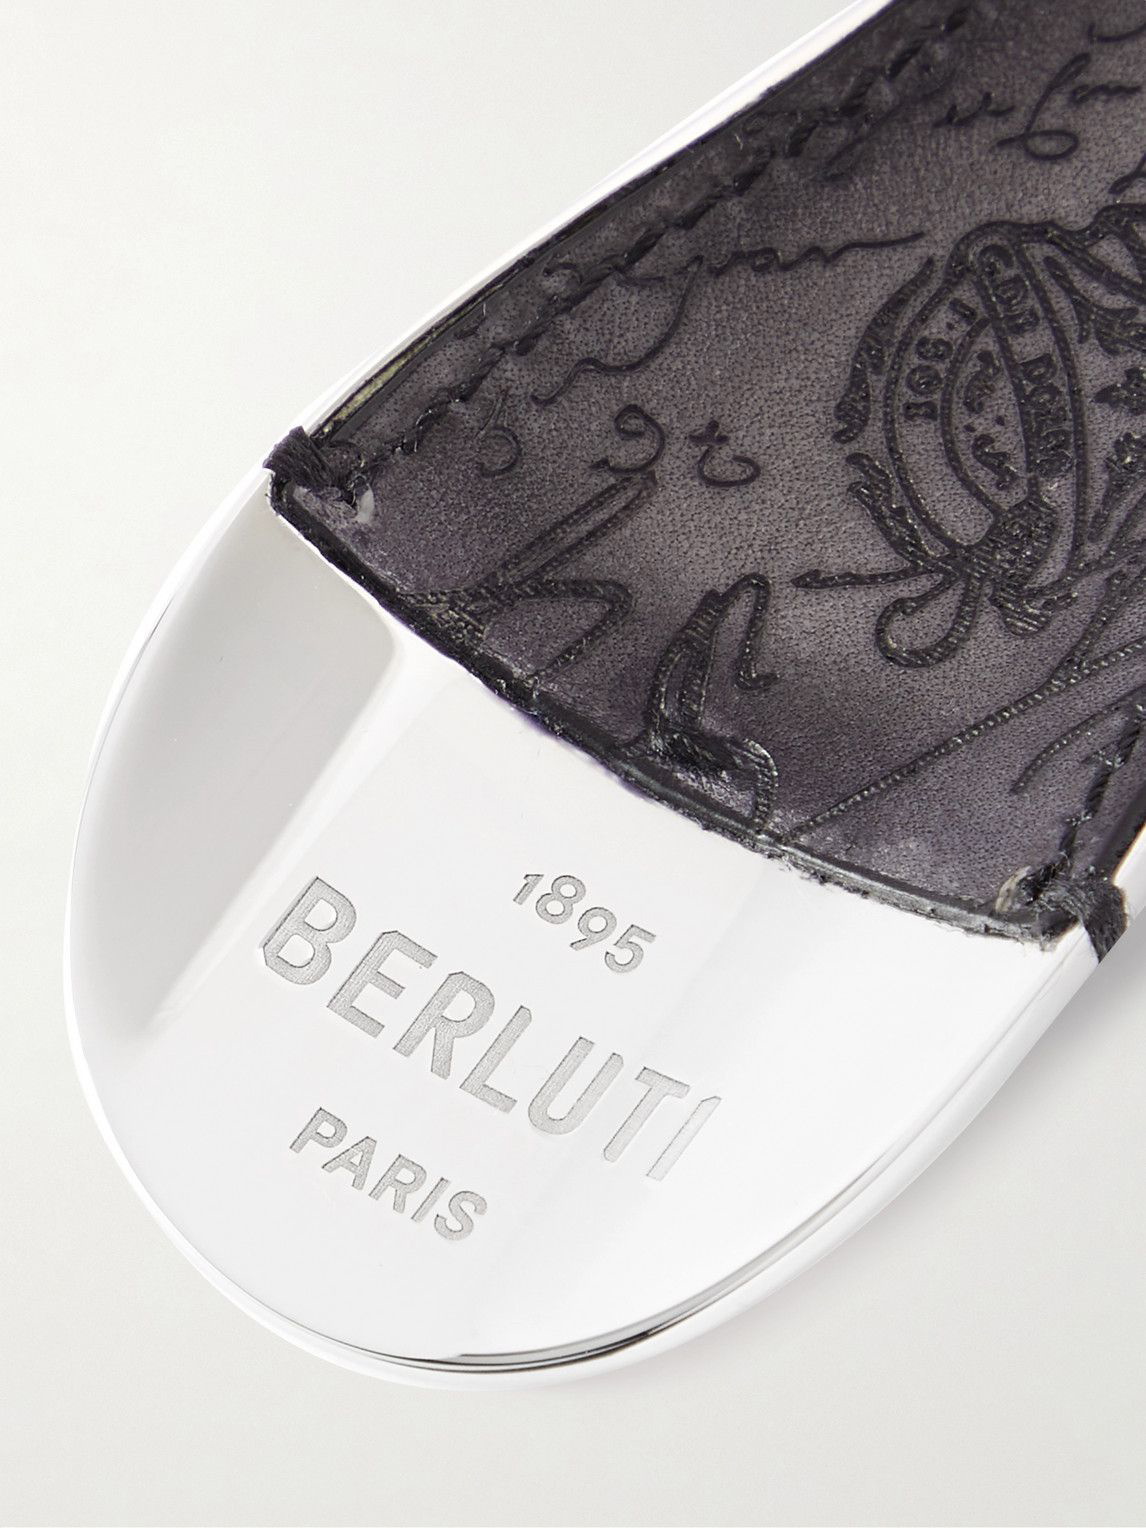 BERLUTI Scritto Venezia Leather and Silver-Tone Key Fob for Men